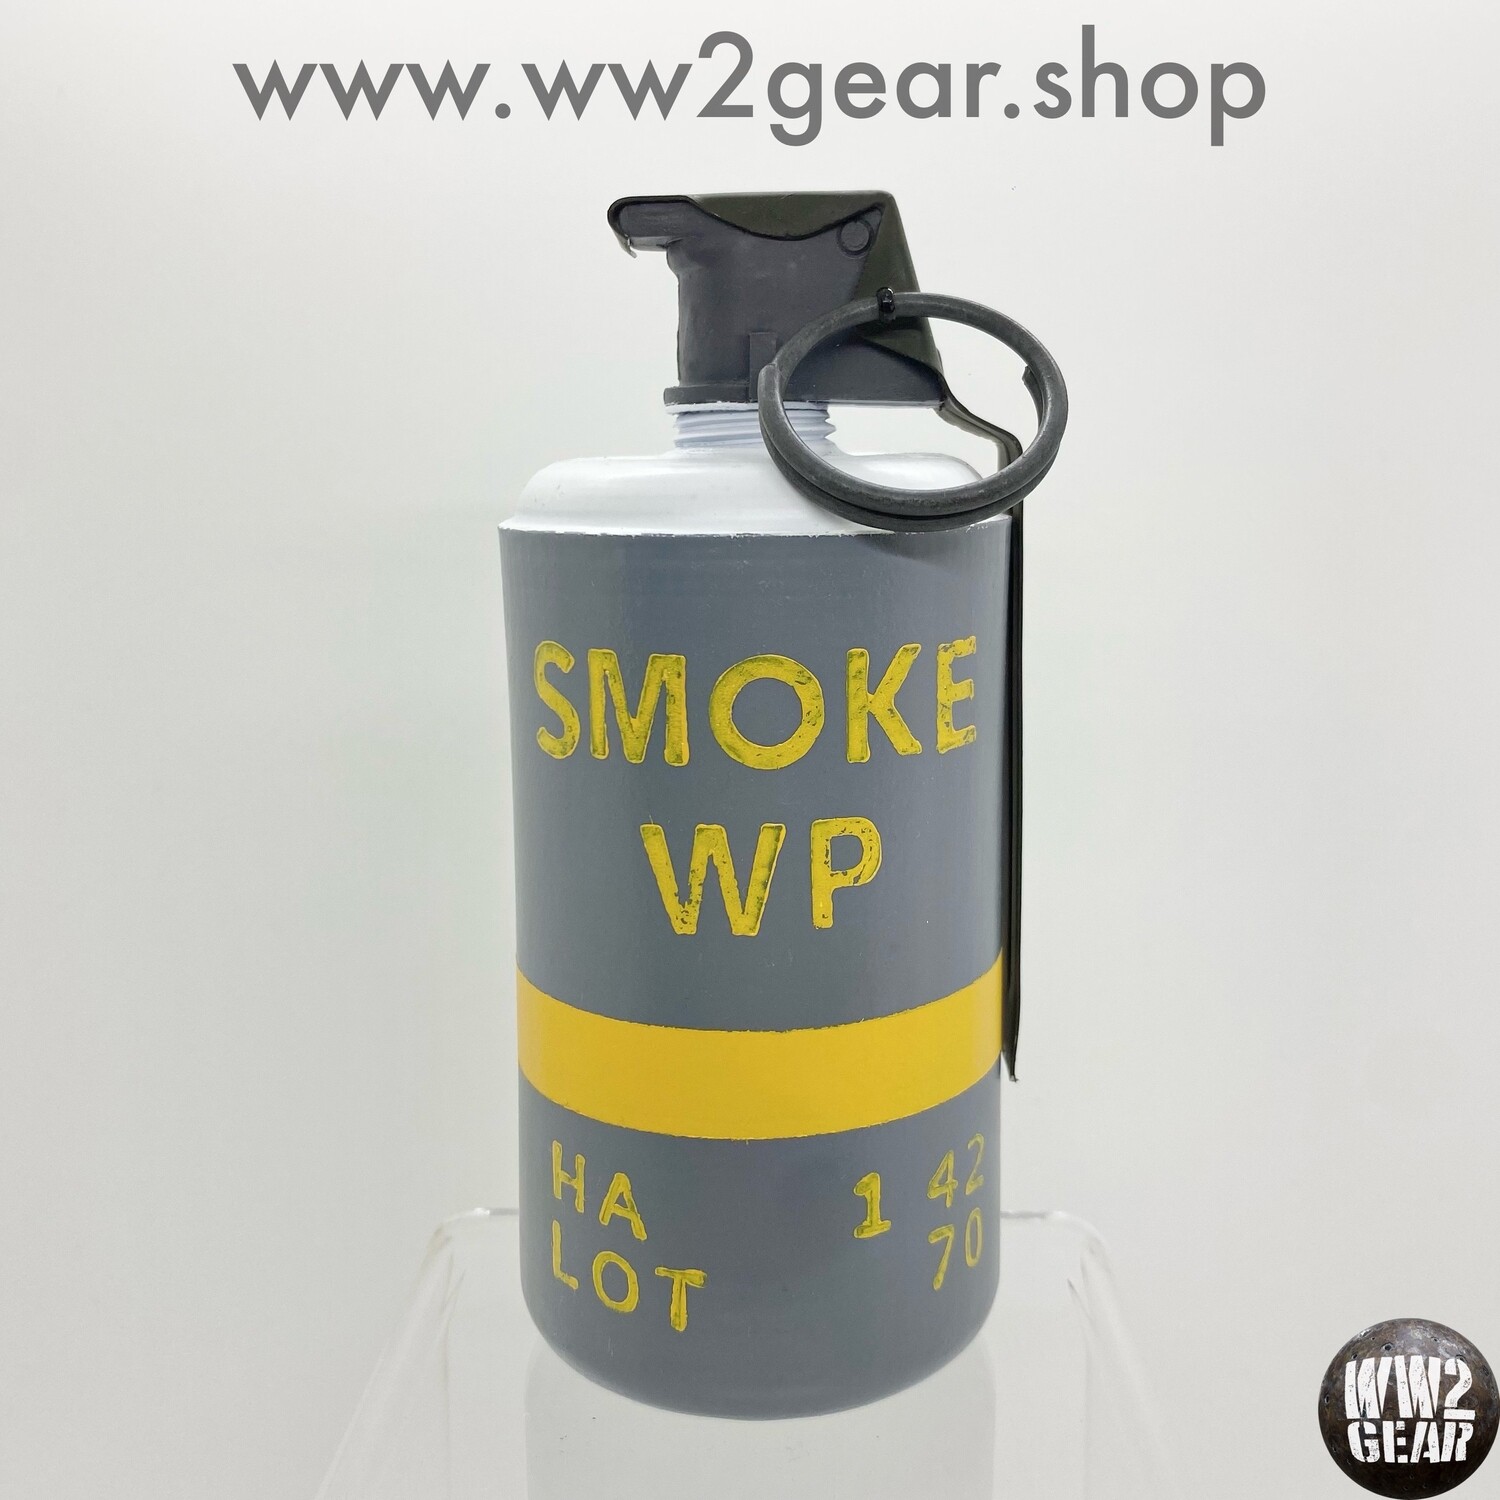 US WW2 M15 White Phosphorus WP Smoke Grenade (Reproduction)